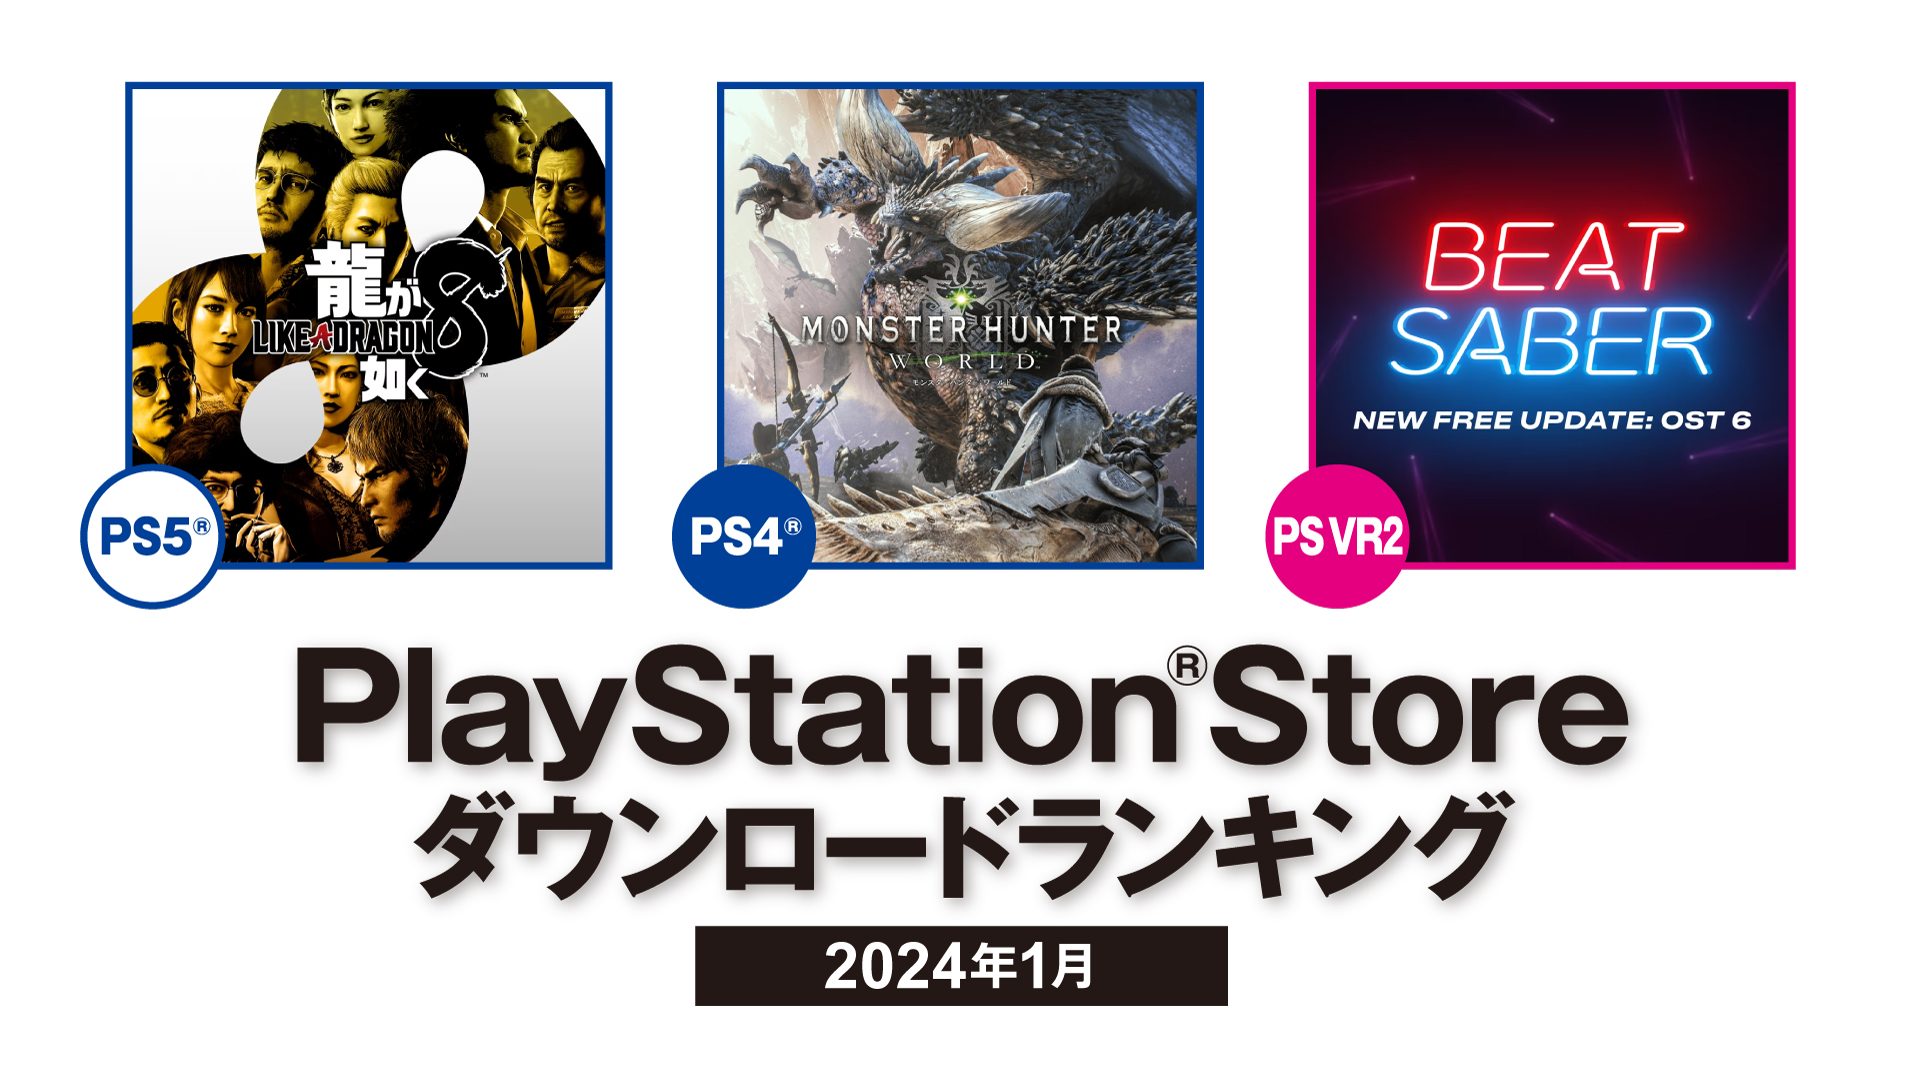 プレイステーション®5 11月12日(木)に発売決定 PS5™デジタル